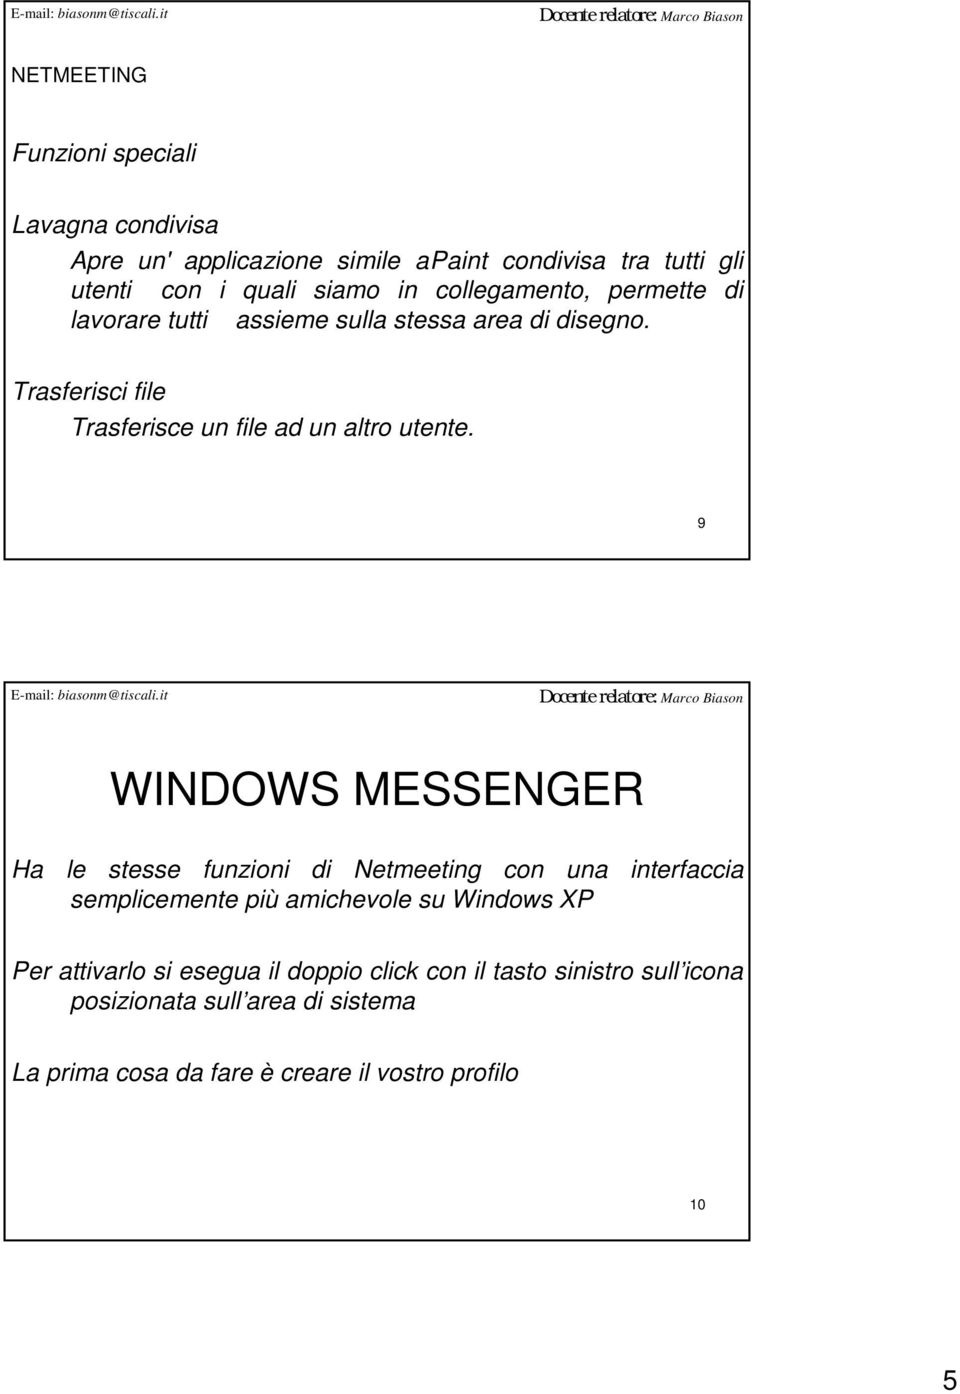 9 WINDOWS MESSENGER Ha le stesse funzioni di Netmeeting con una interfaccia semplicemente più amichevole su Windows XP Per attivarlo